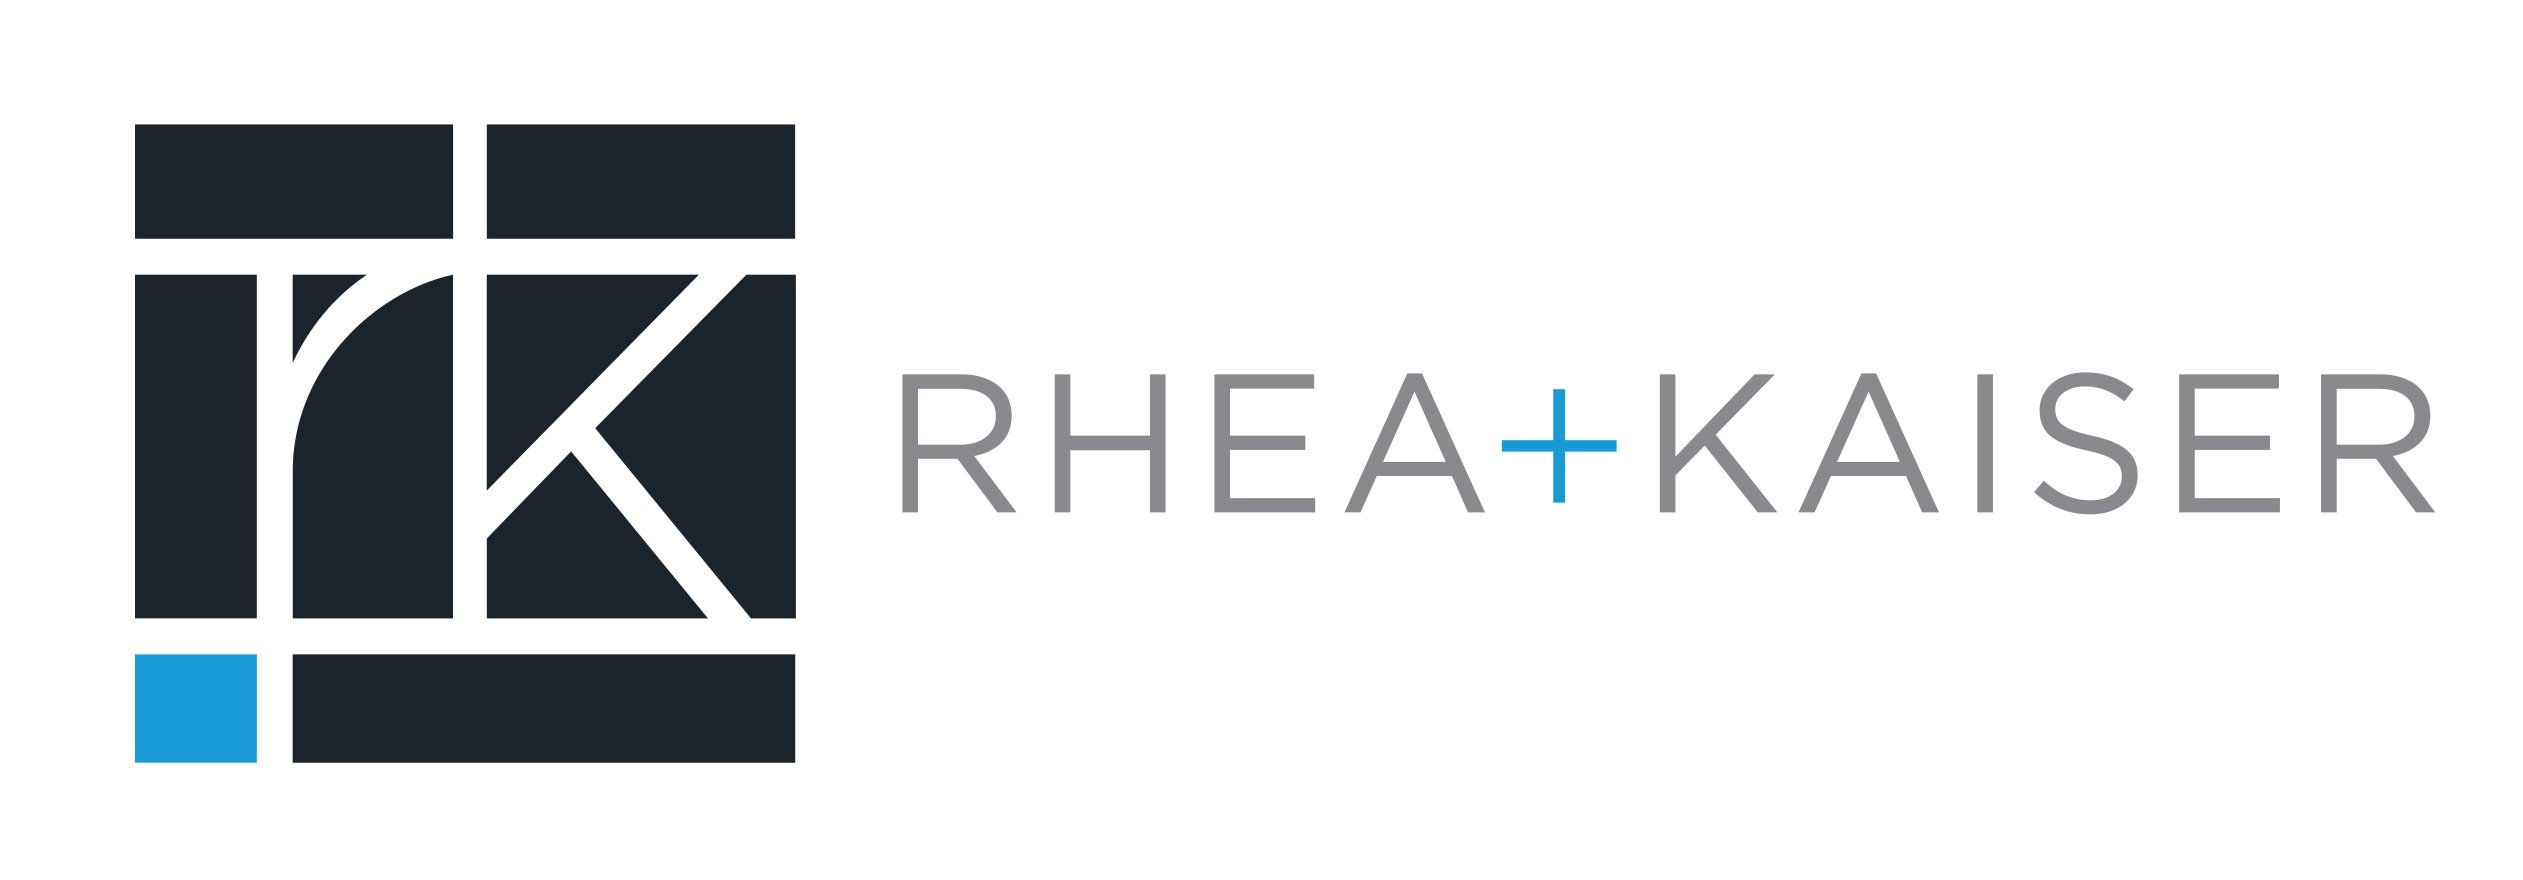 Rhea + Kaiser logo